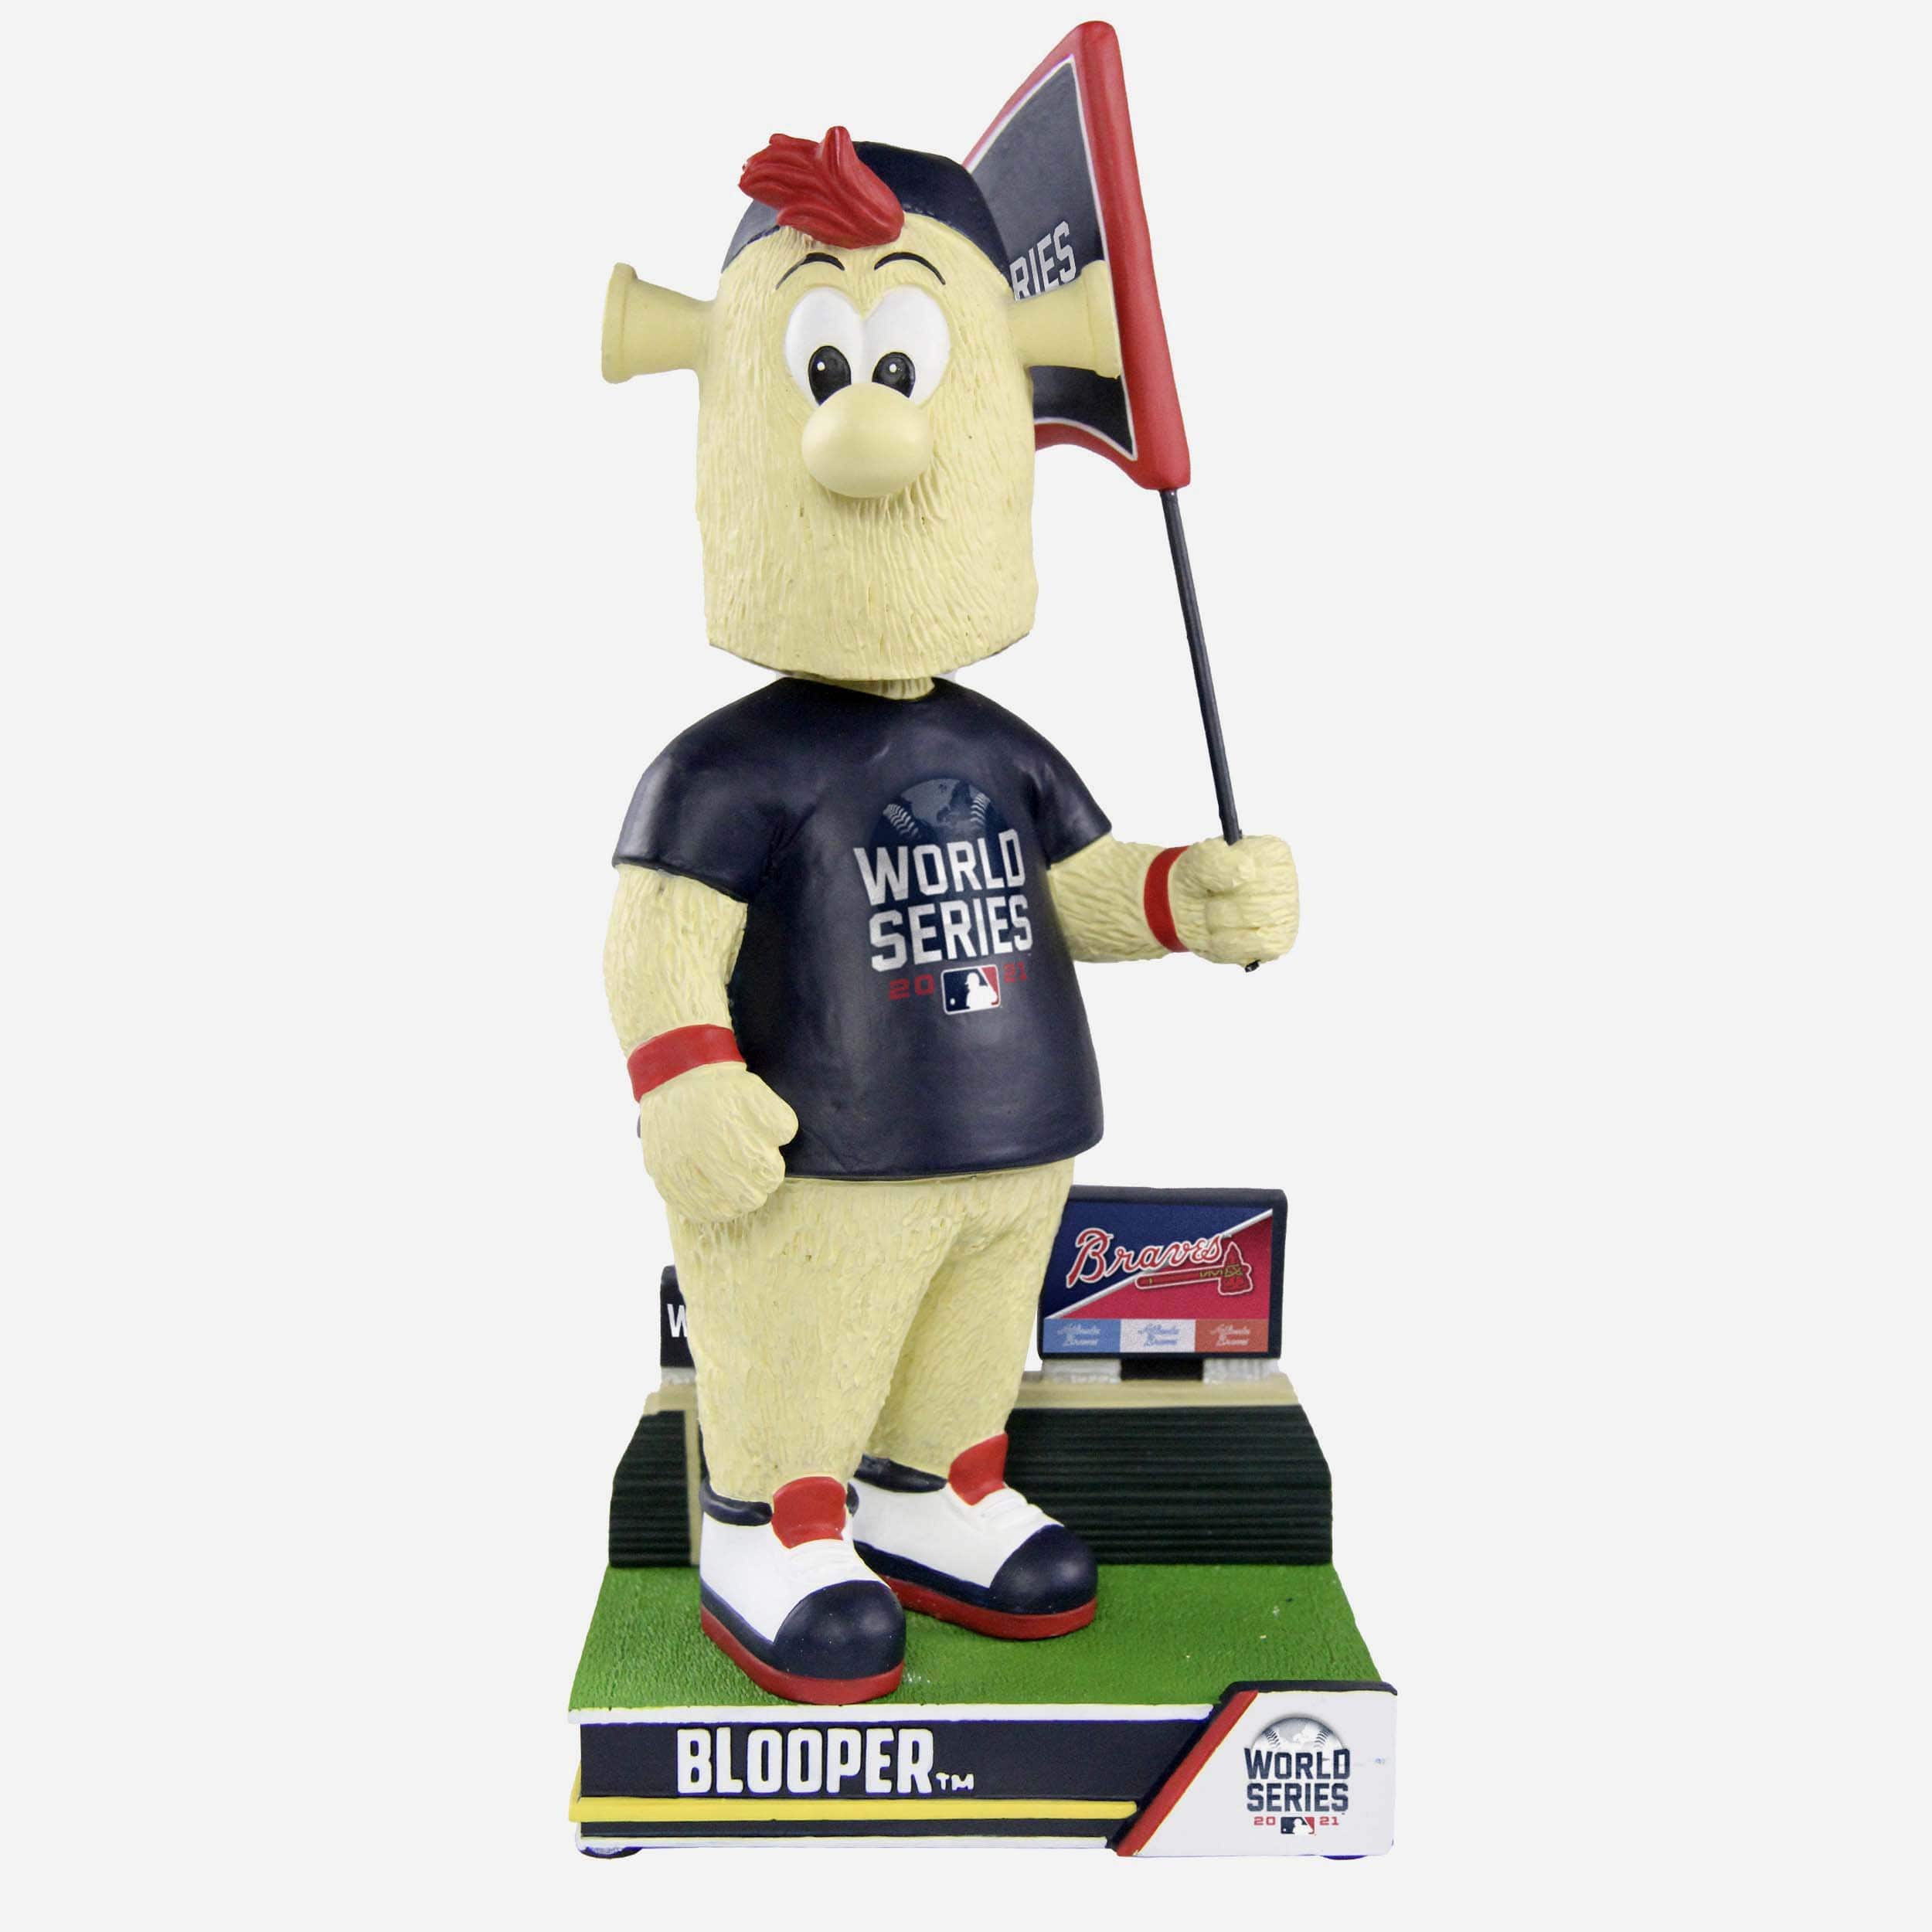 Blooper+Atlanta+Braves+Mascot+Bobblehead+MLB for sale online